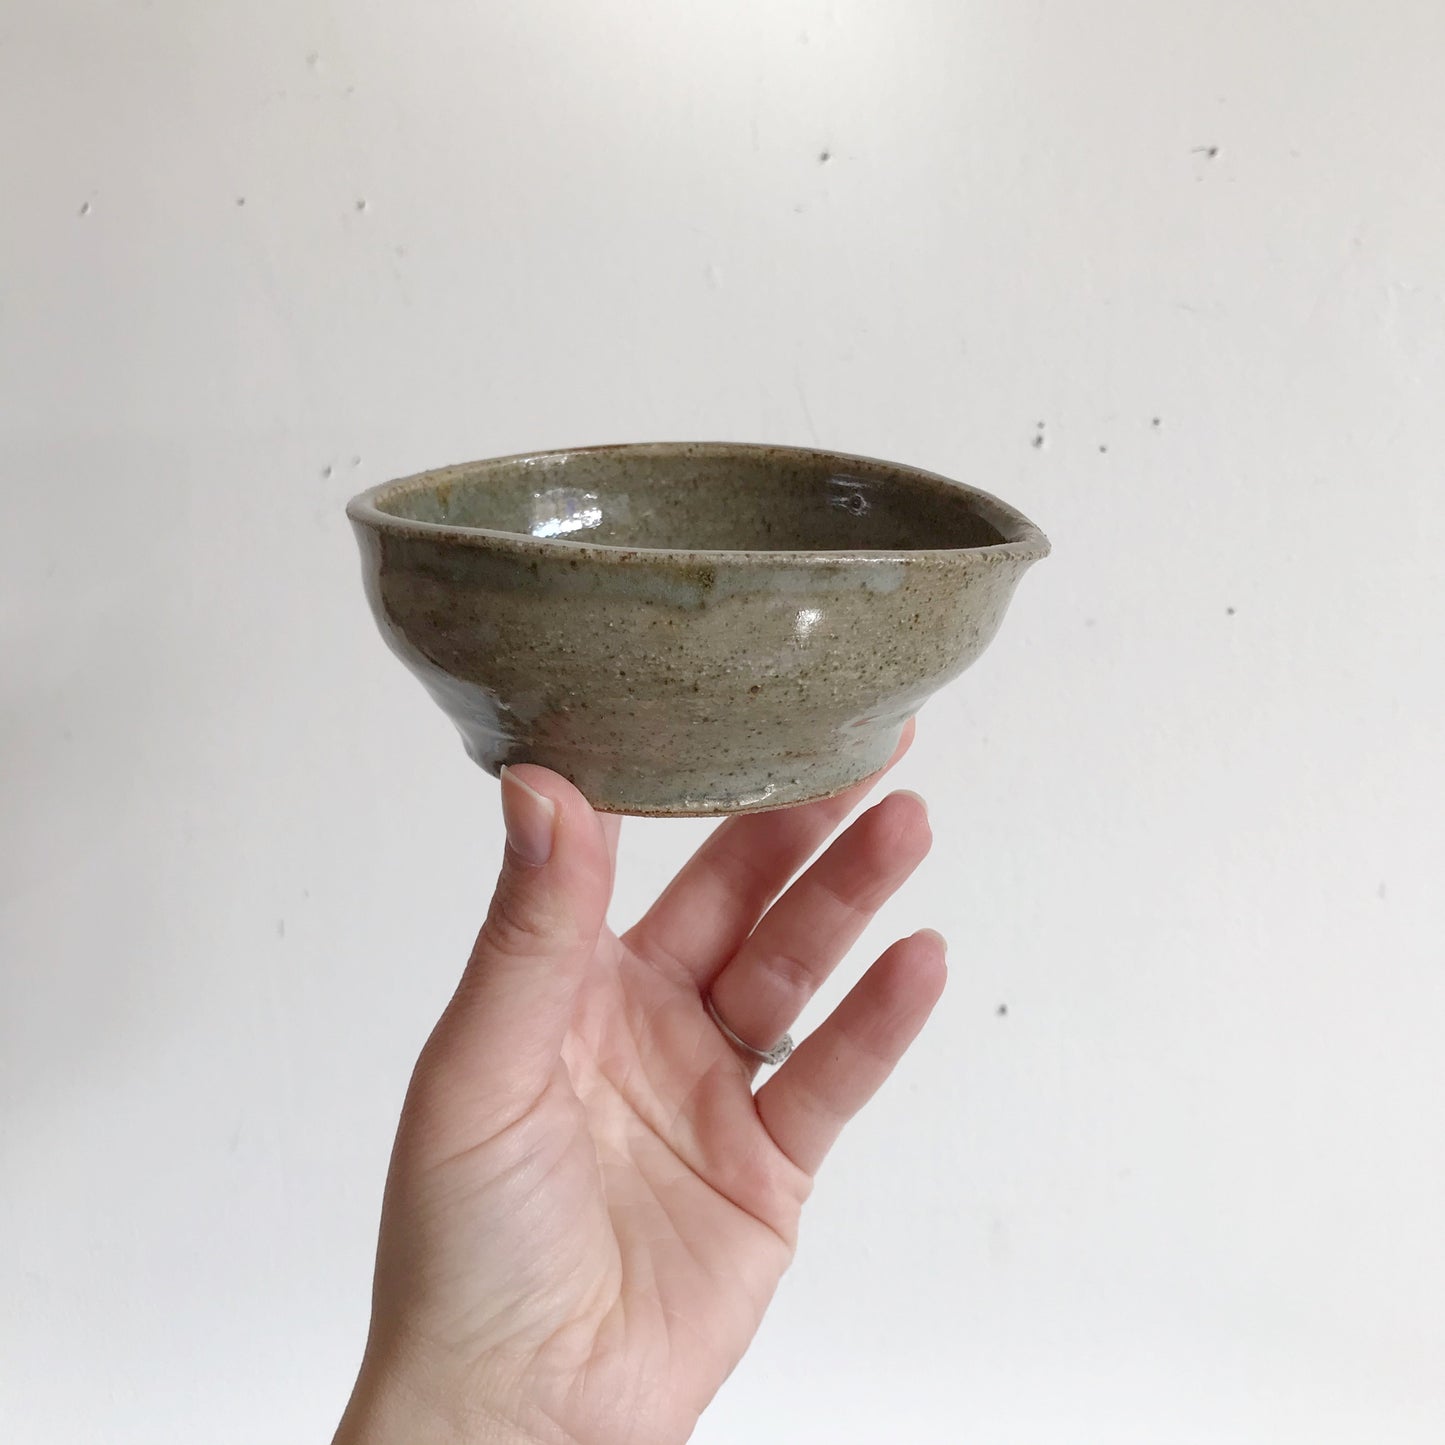 Handmade Pottery Dish, 4.5”